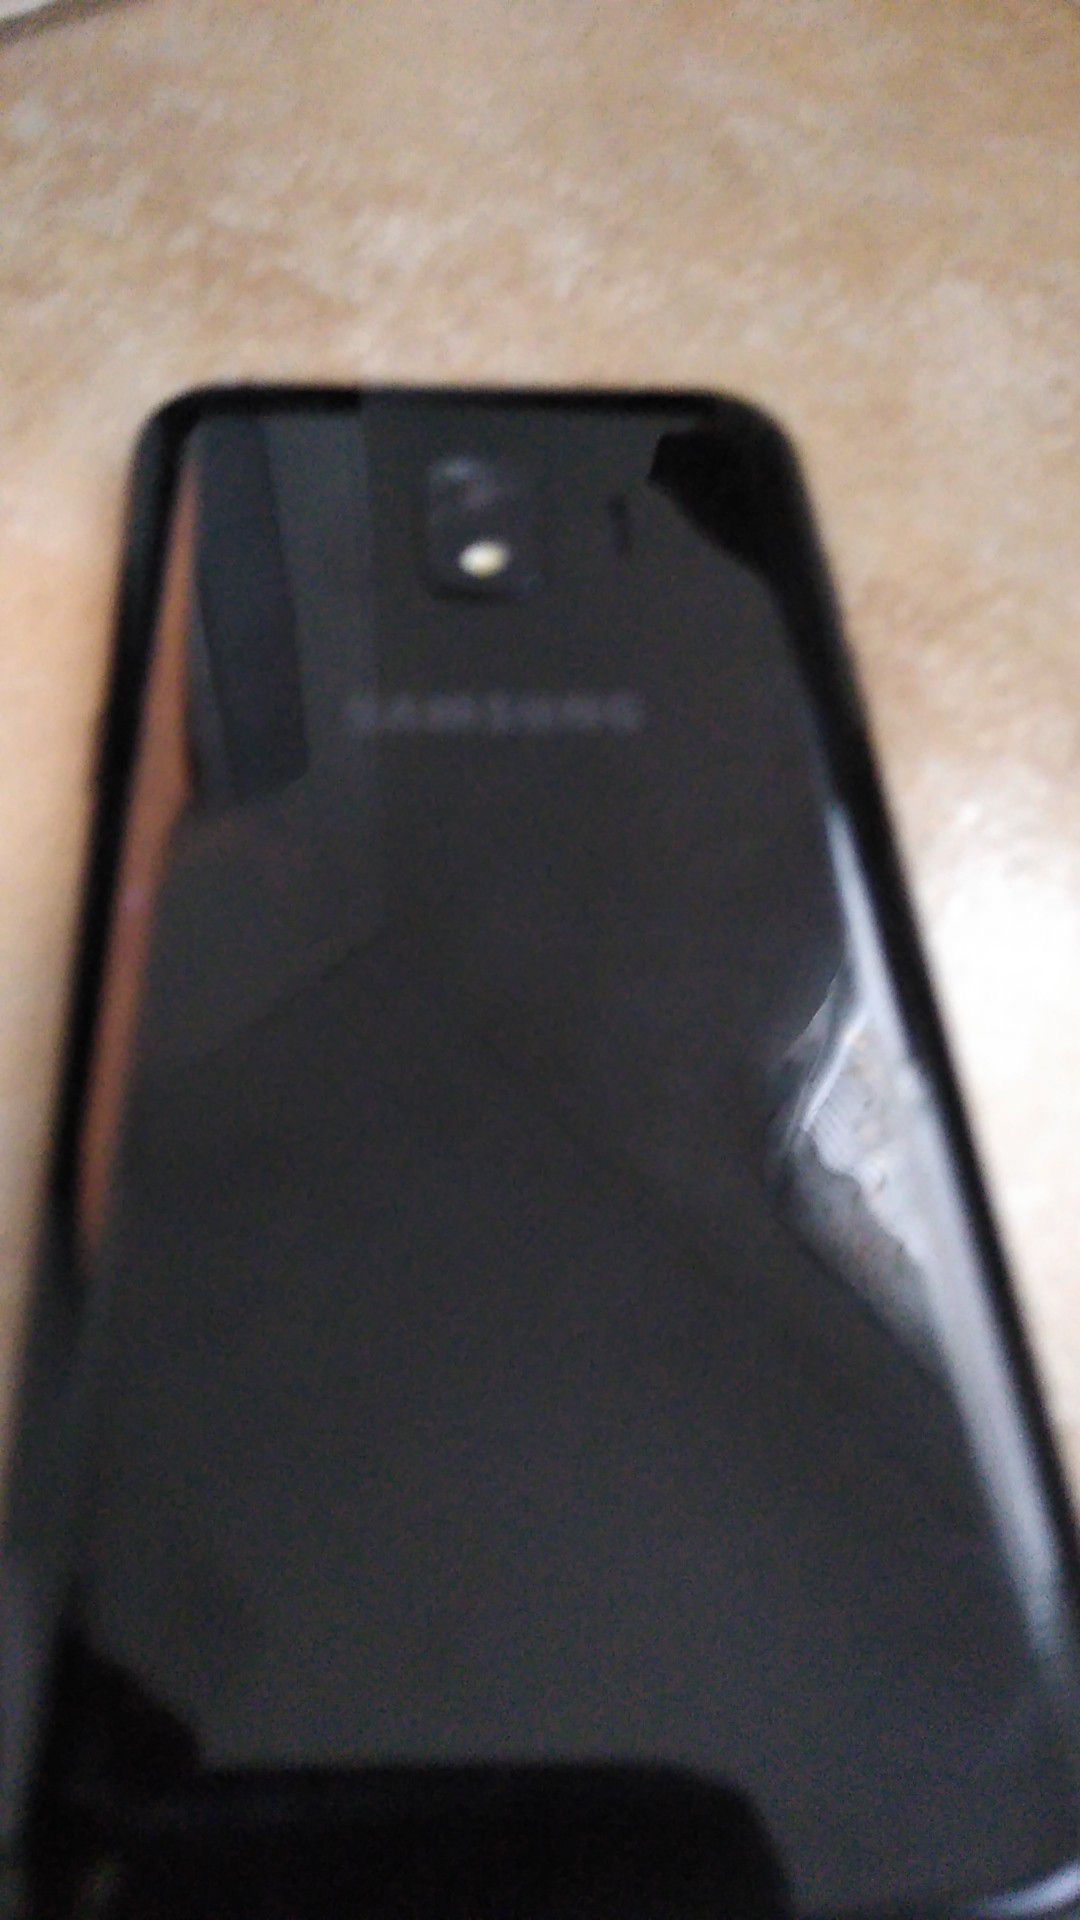 Samsung Galaxy j2.